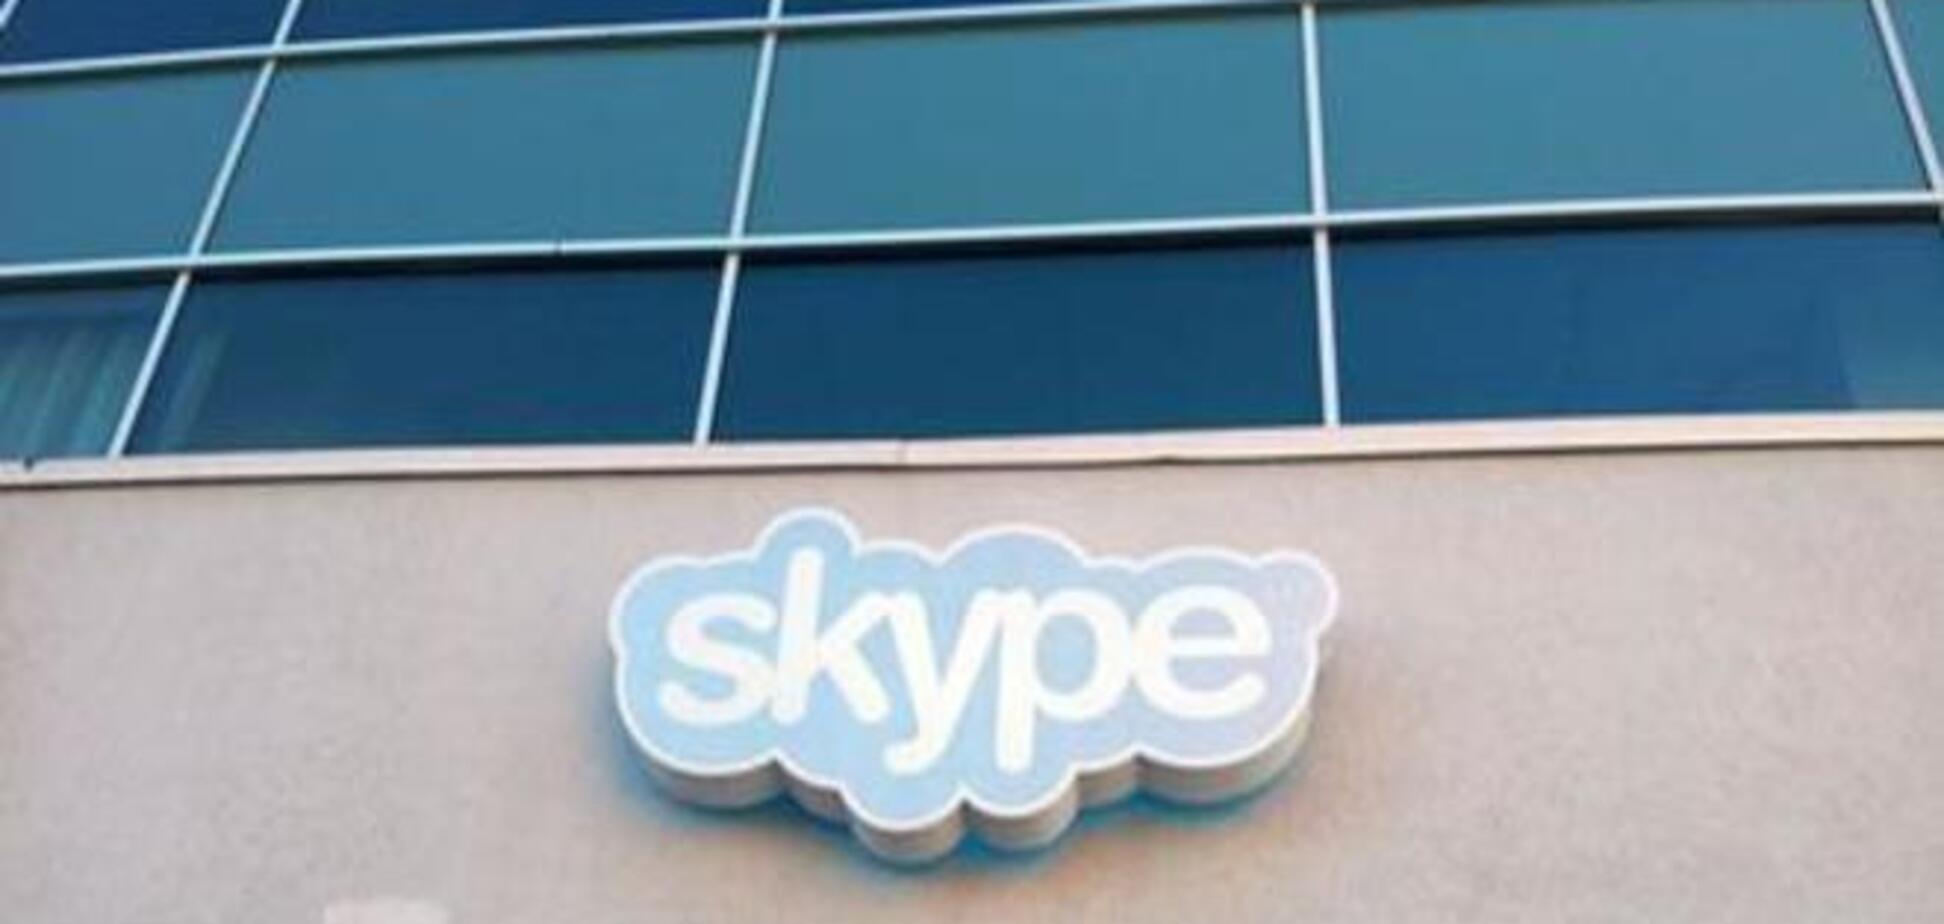 Беларусь: пользователей хотят заставить платить за Skype